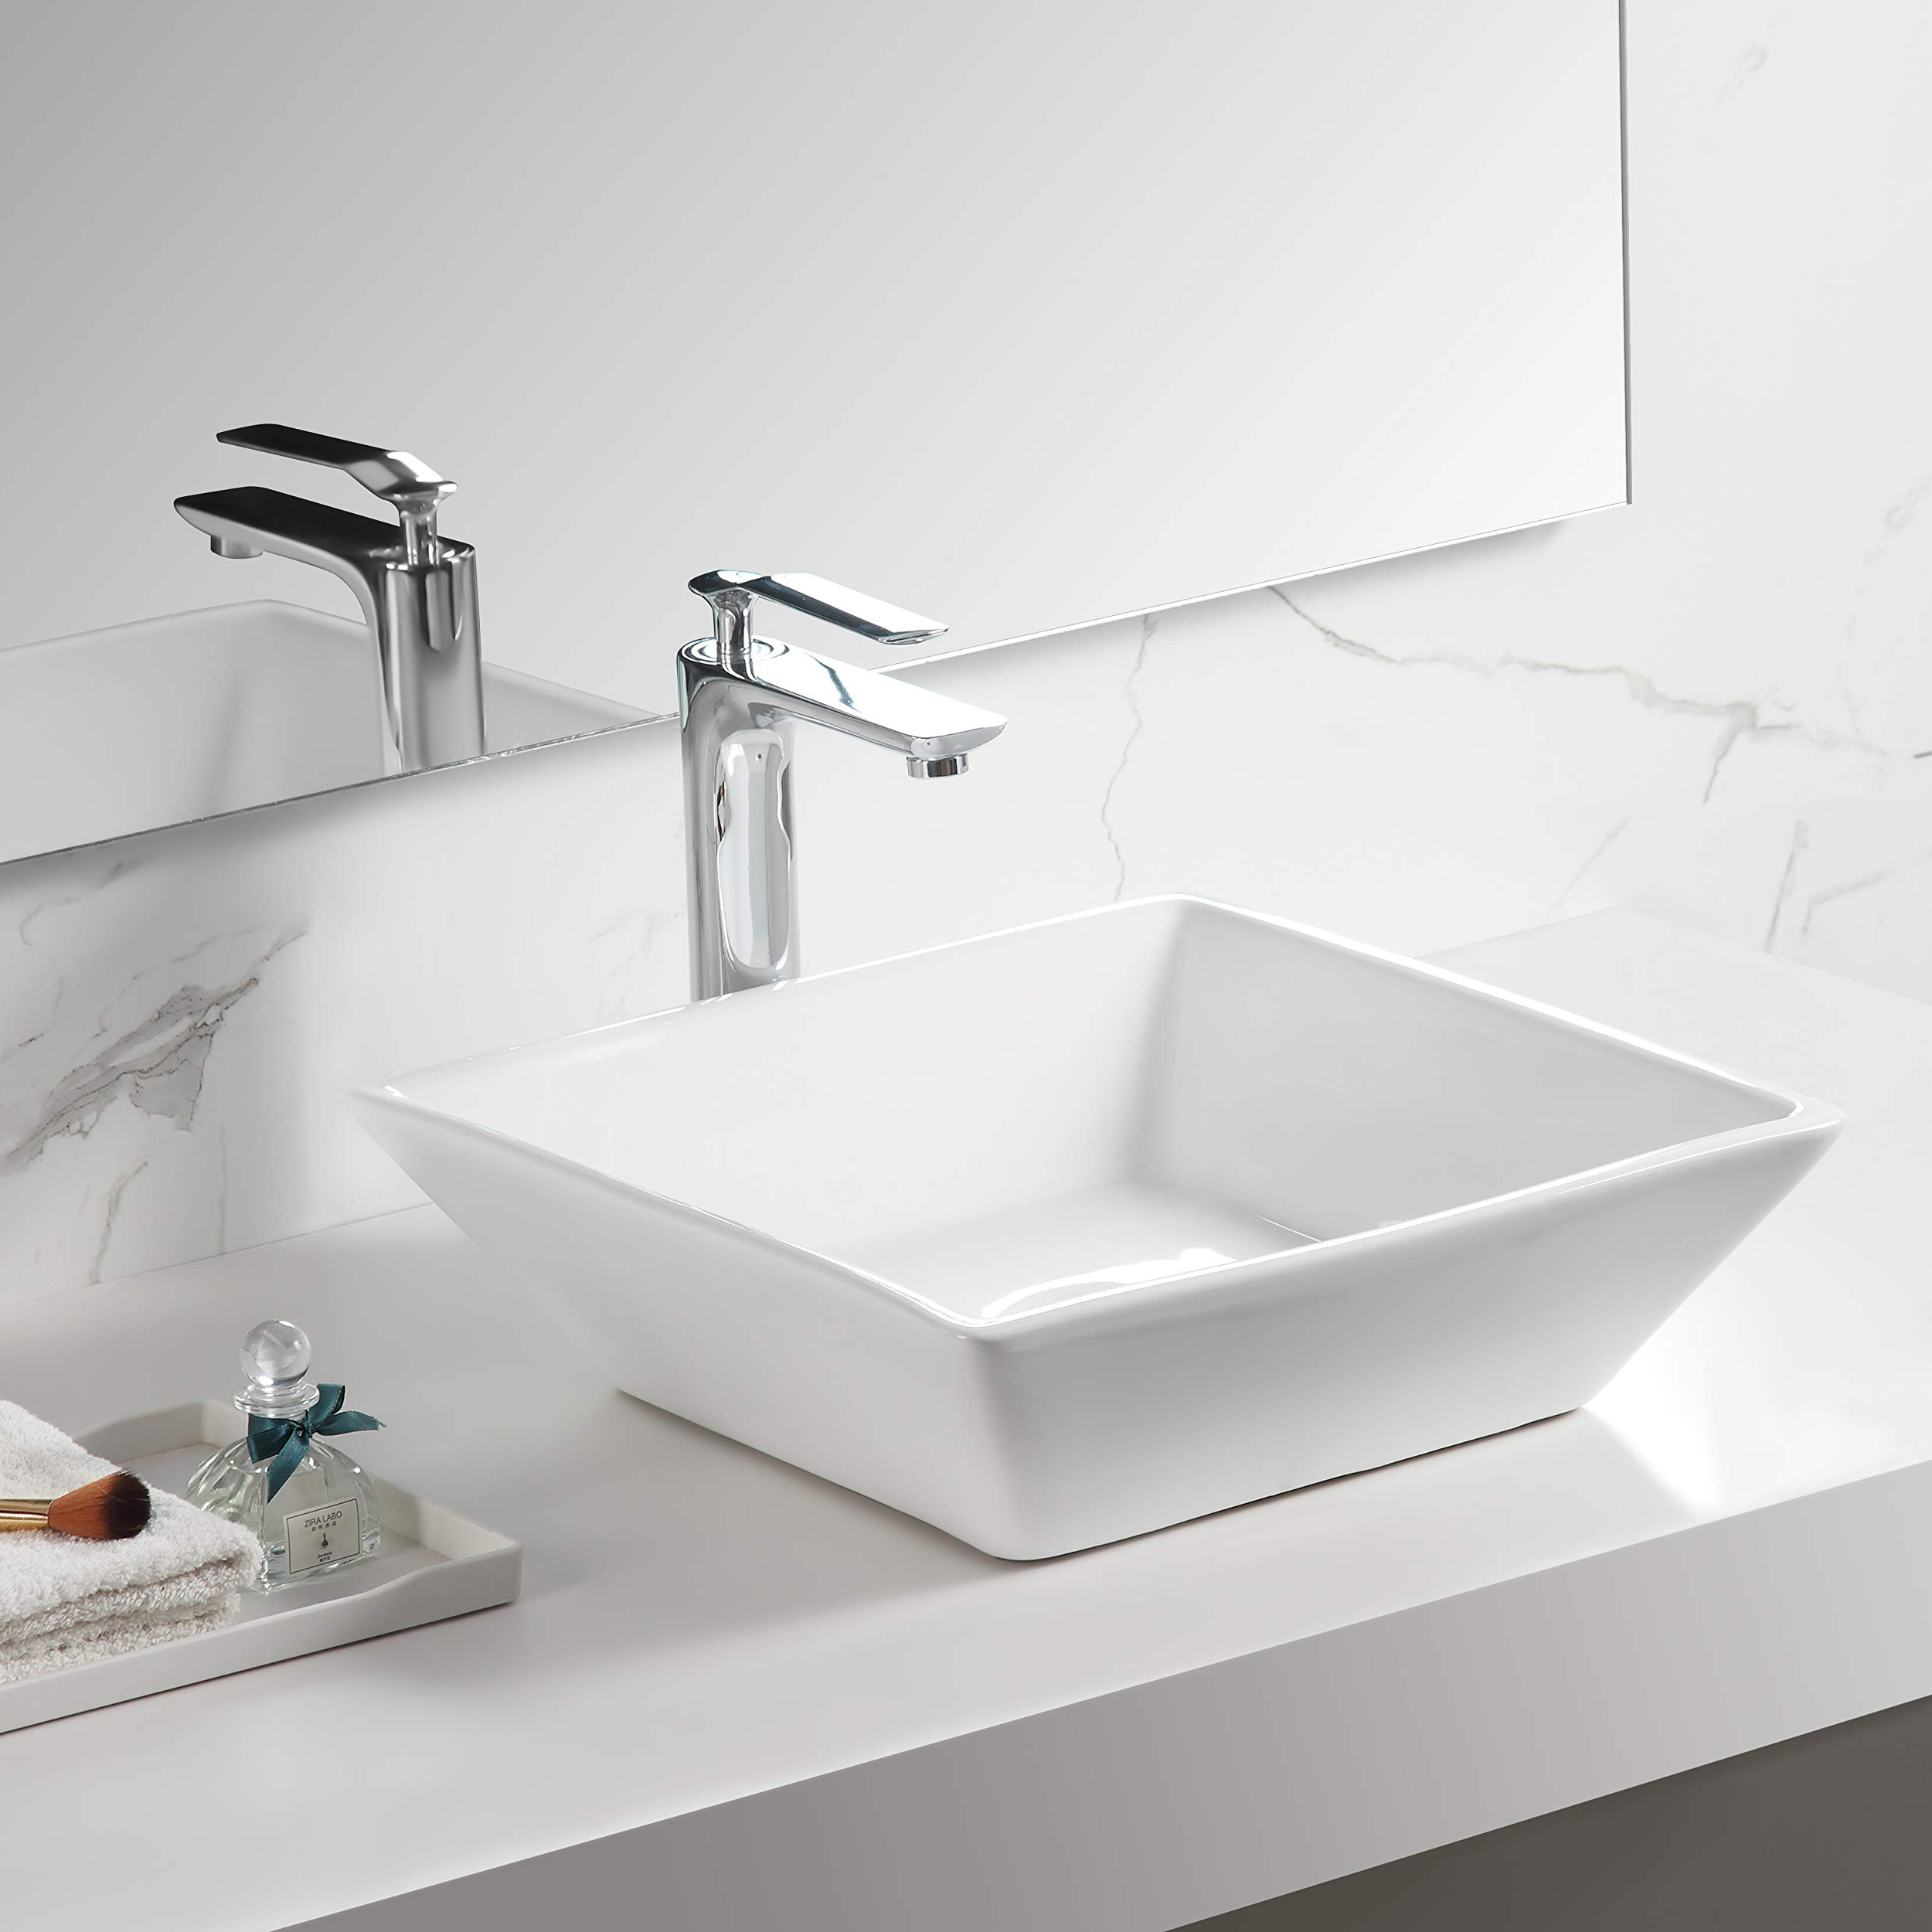 Aquacubic quadratischer Badezimmer-Waschtisch aus weißer Keramik, Kunstwaschbecken